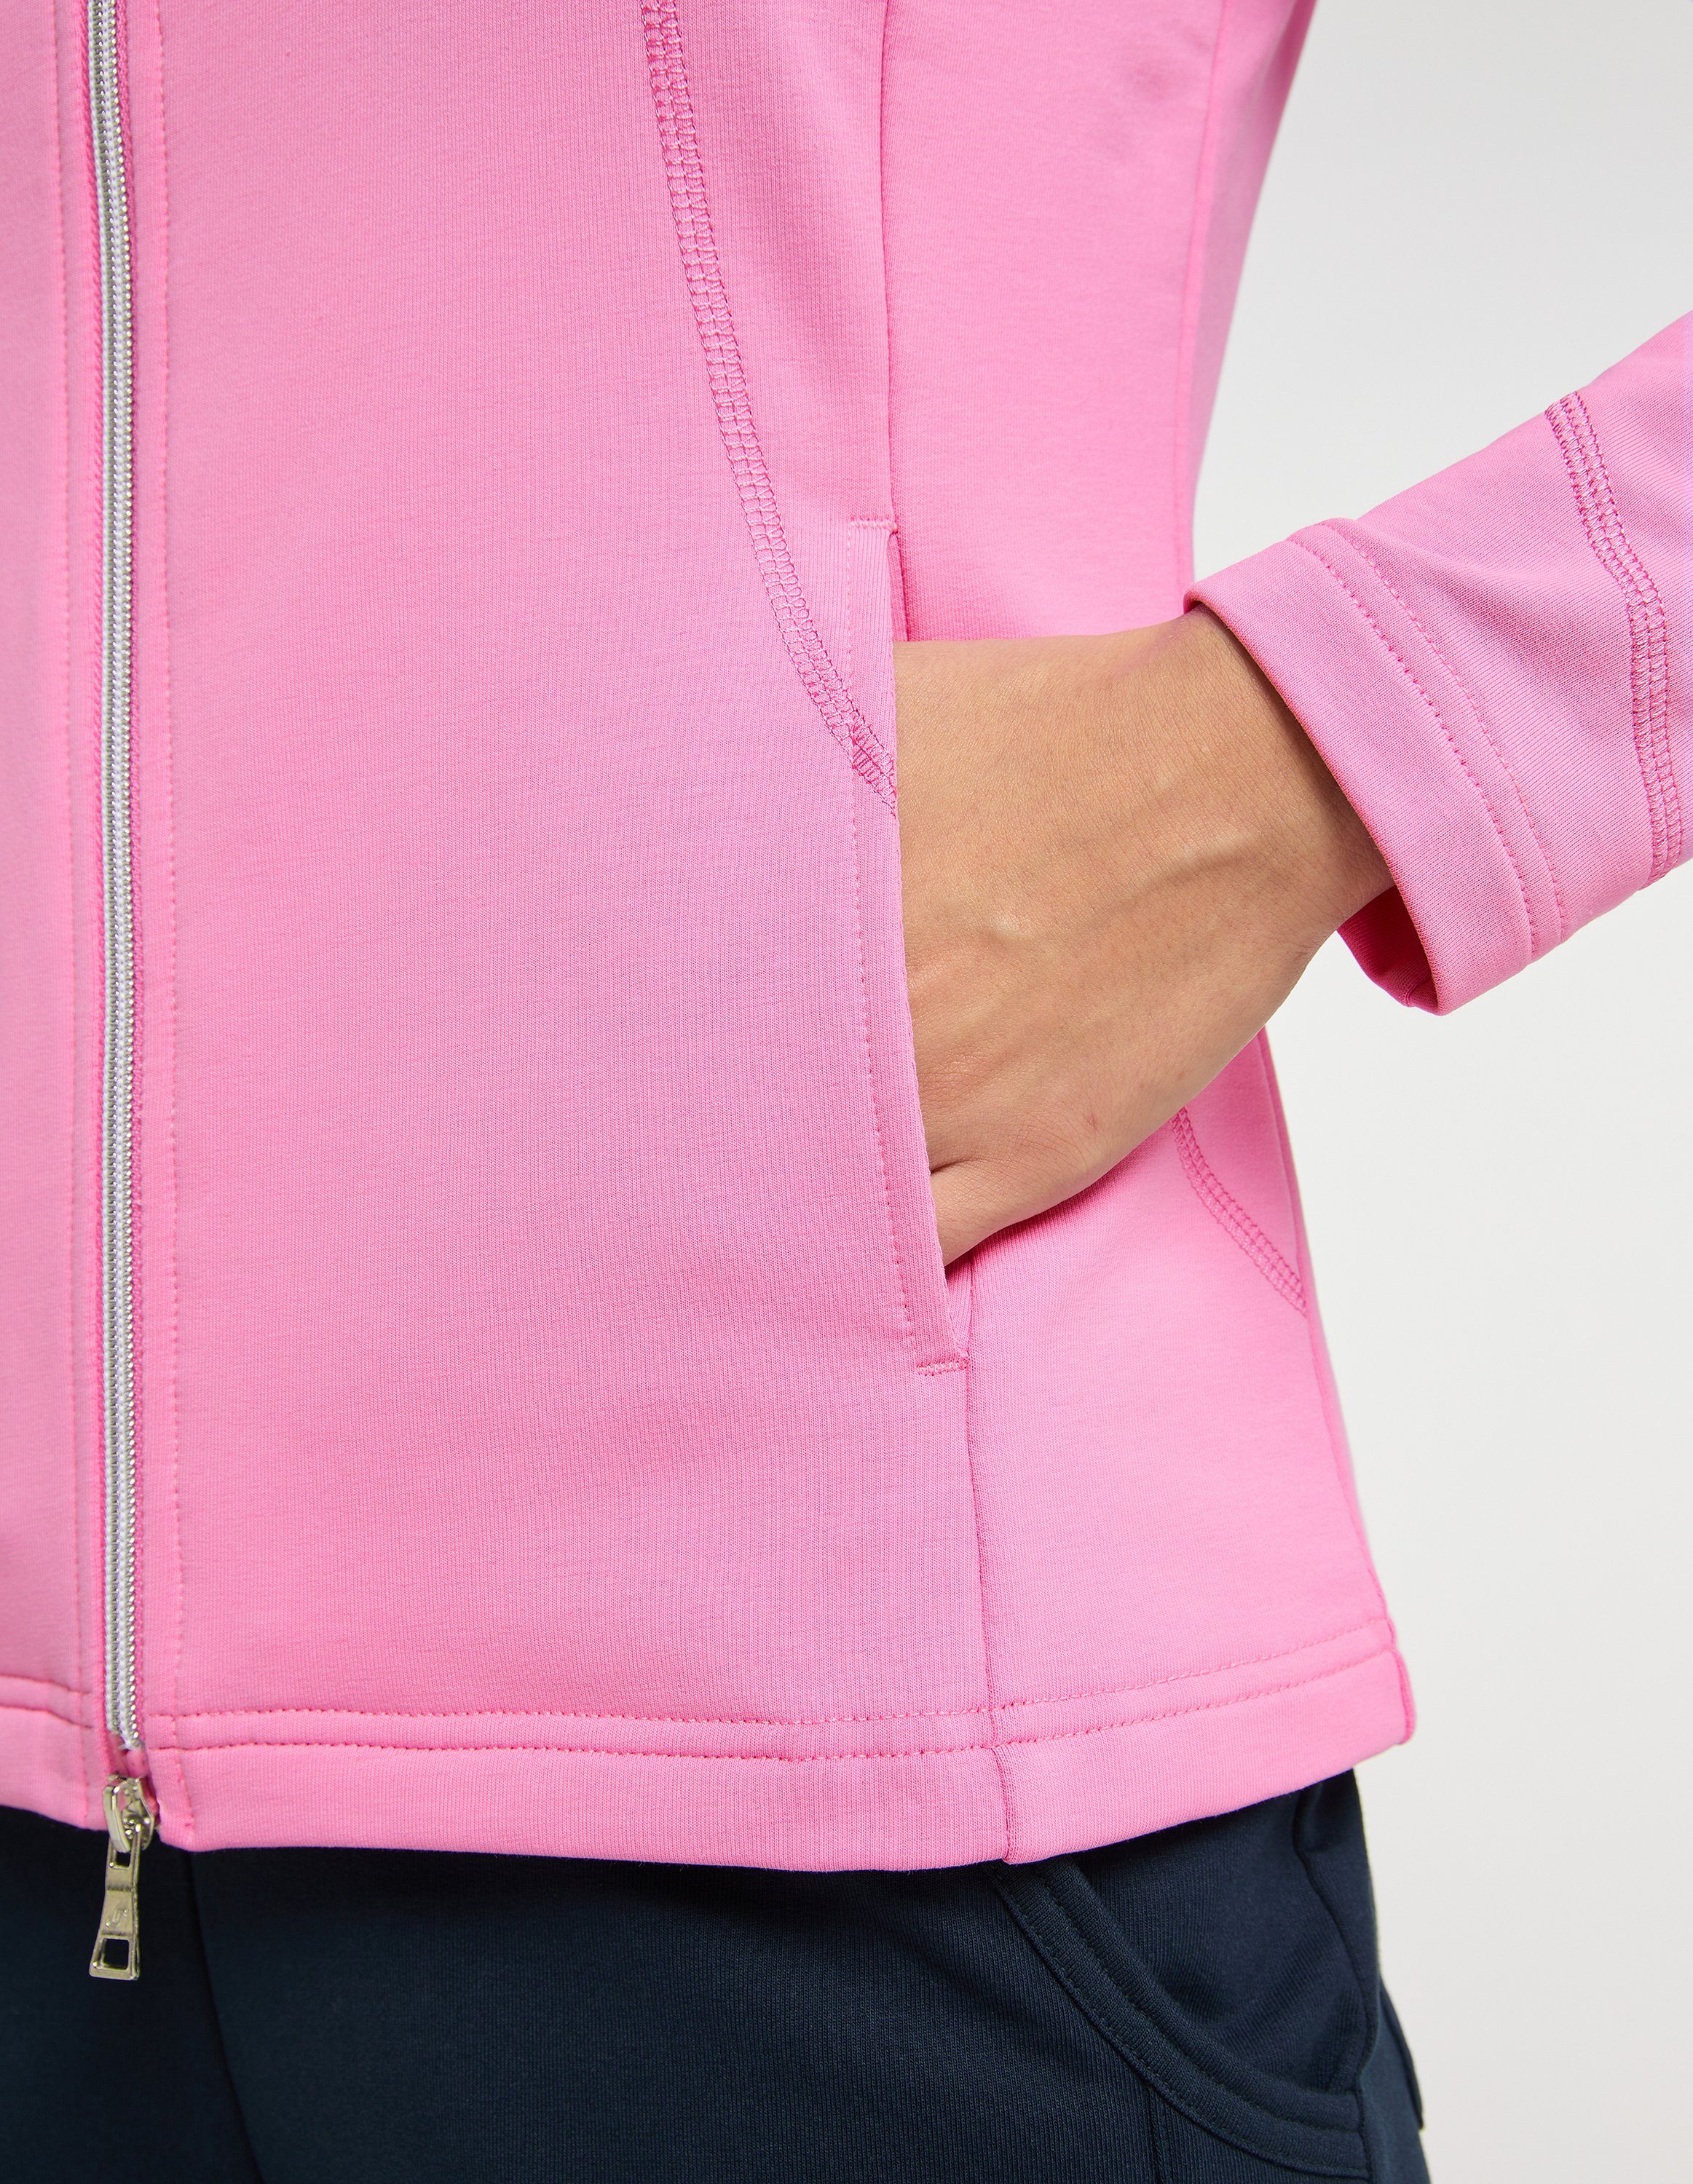 DORIT cyclam pink Trainingsjacke Sportswear Joy Jacke